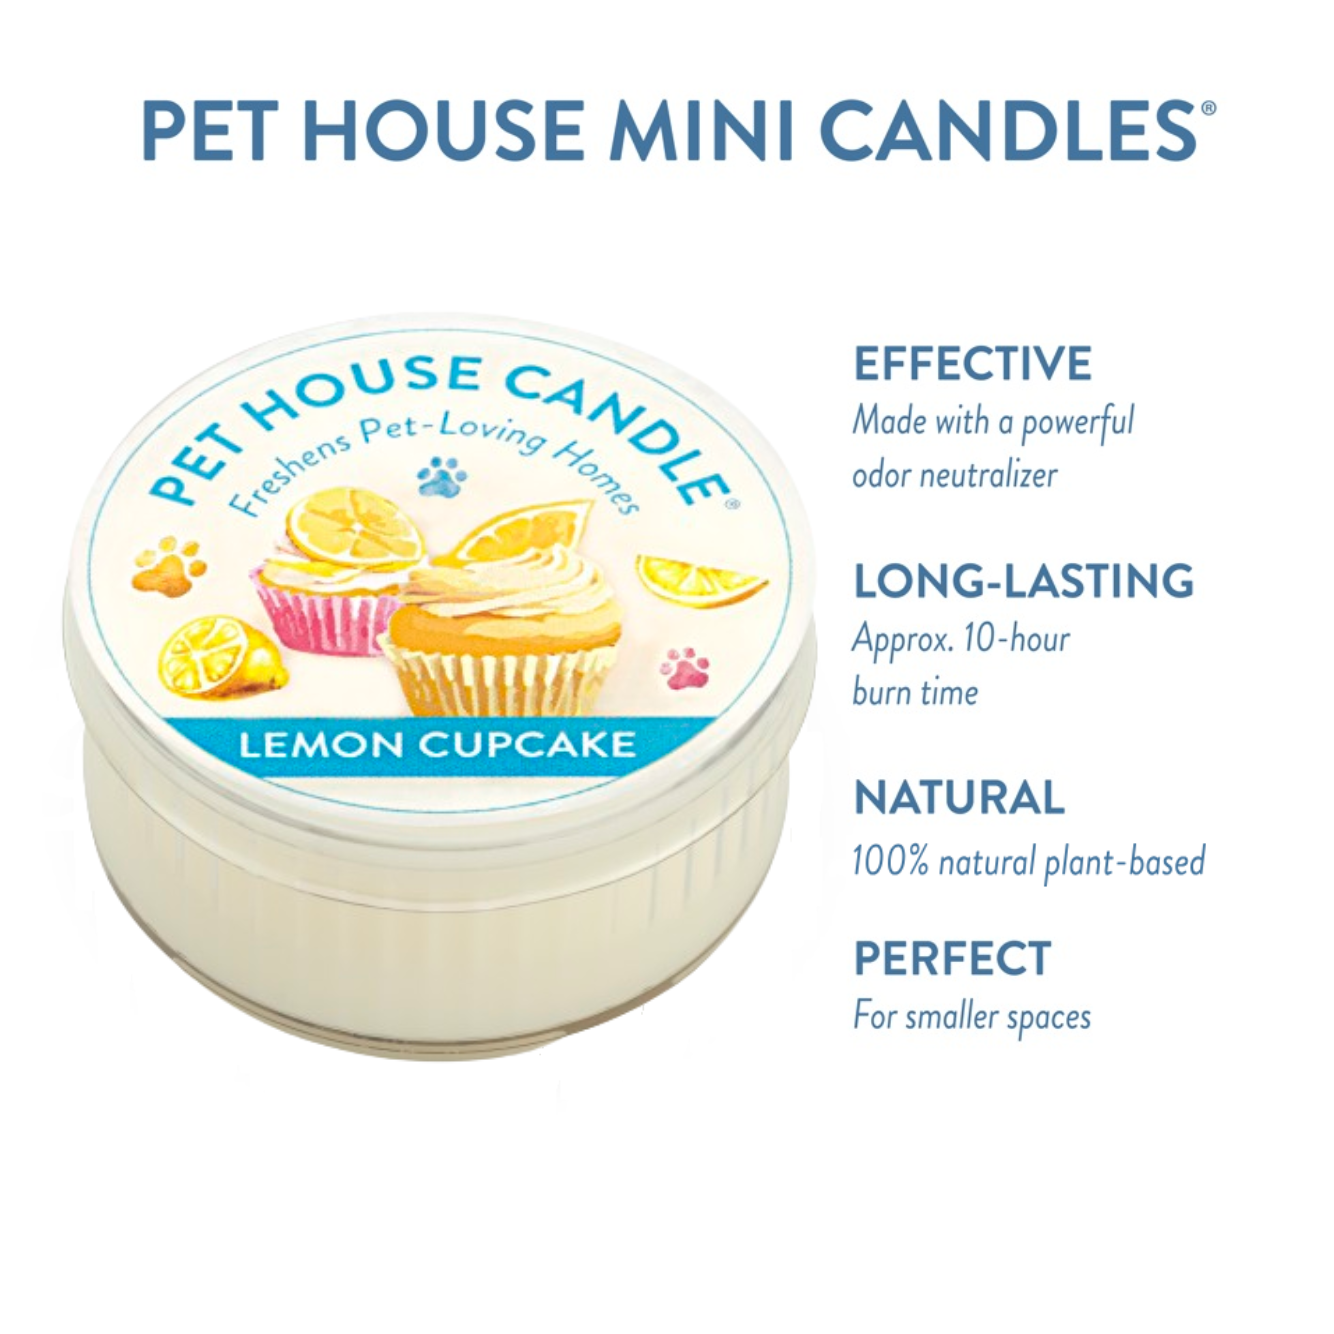 Lemon Cupcake Mini Candle infographics